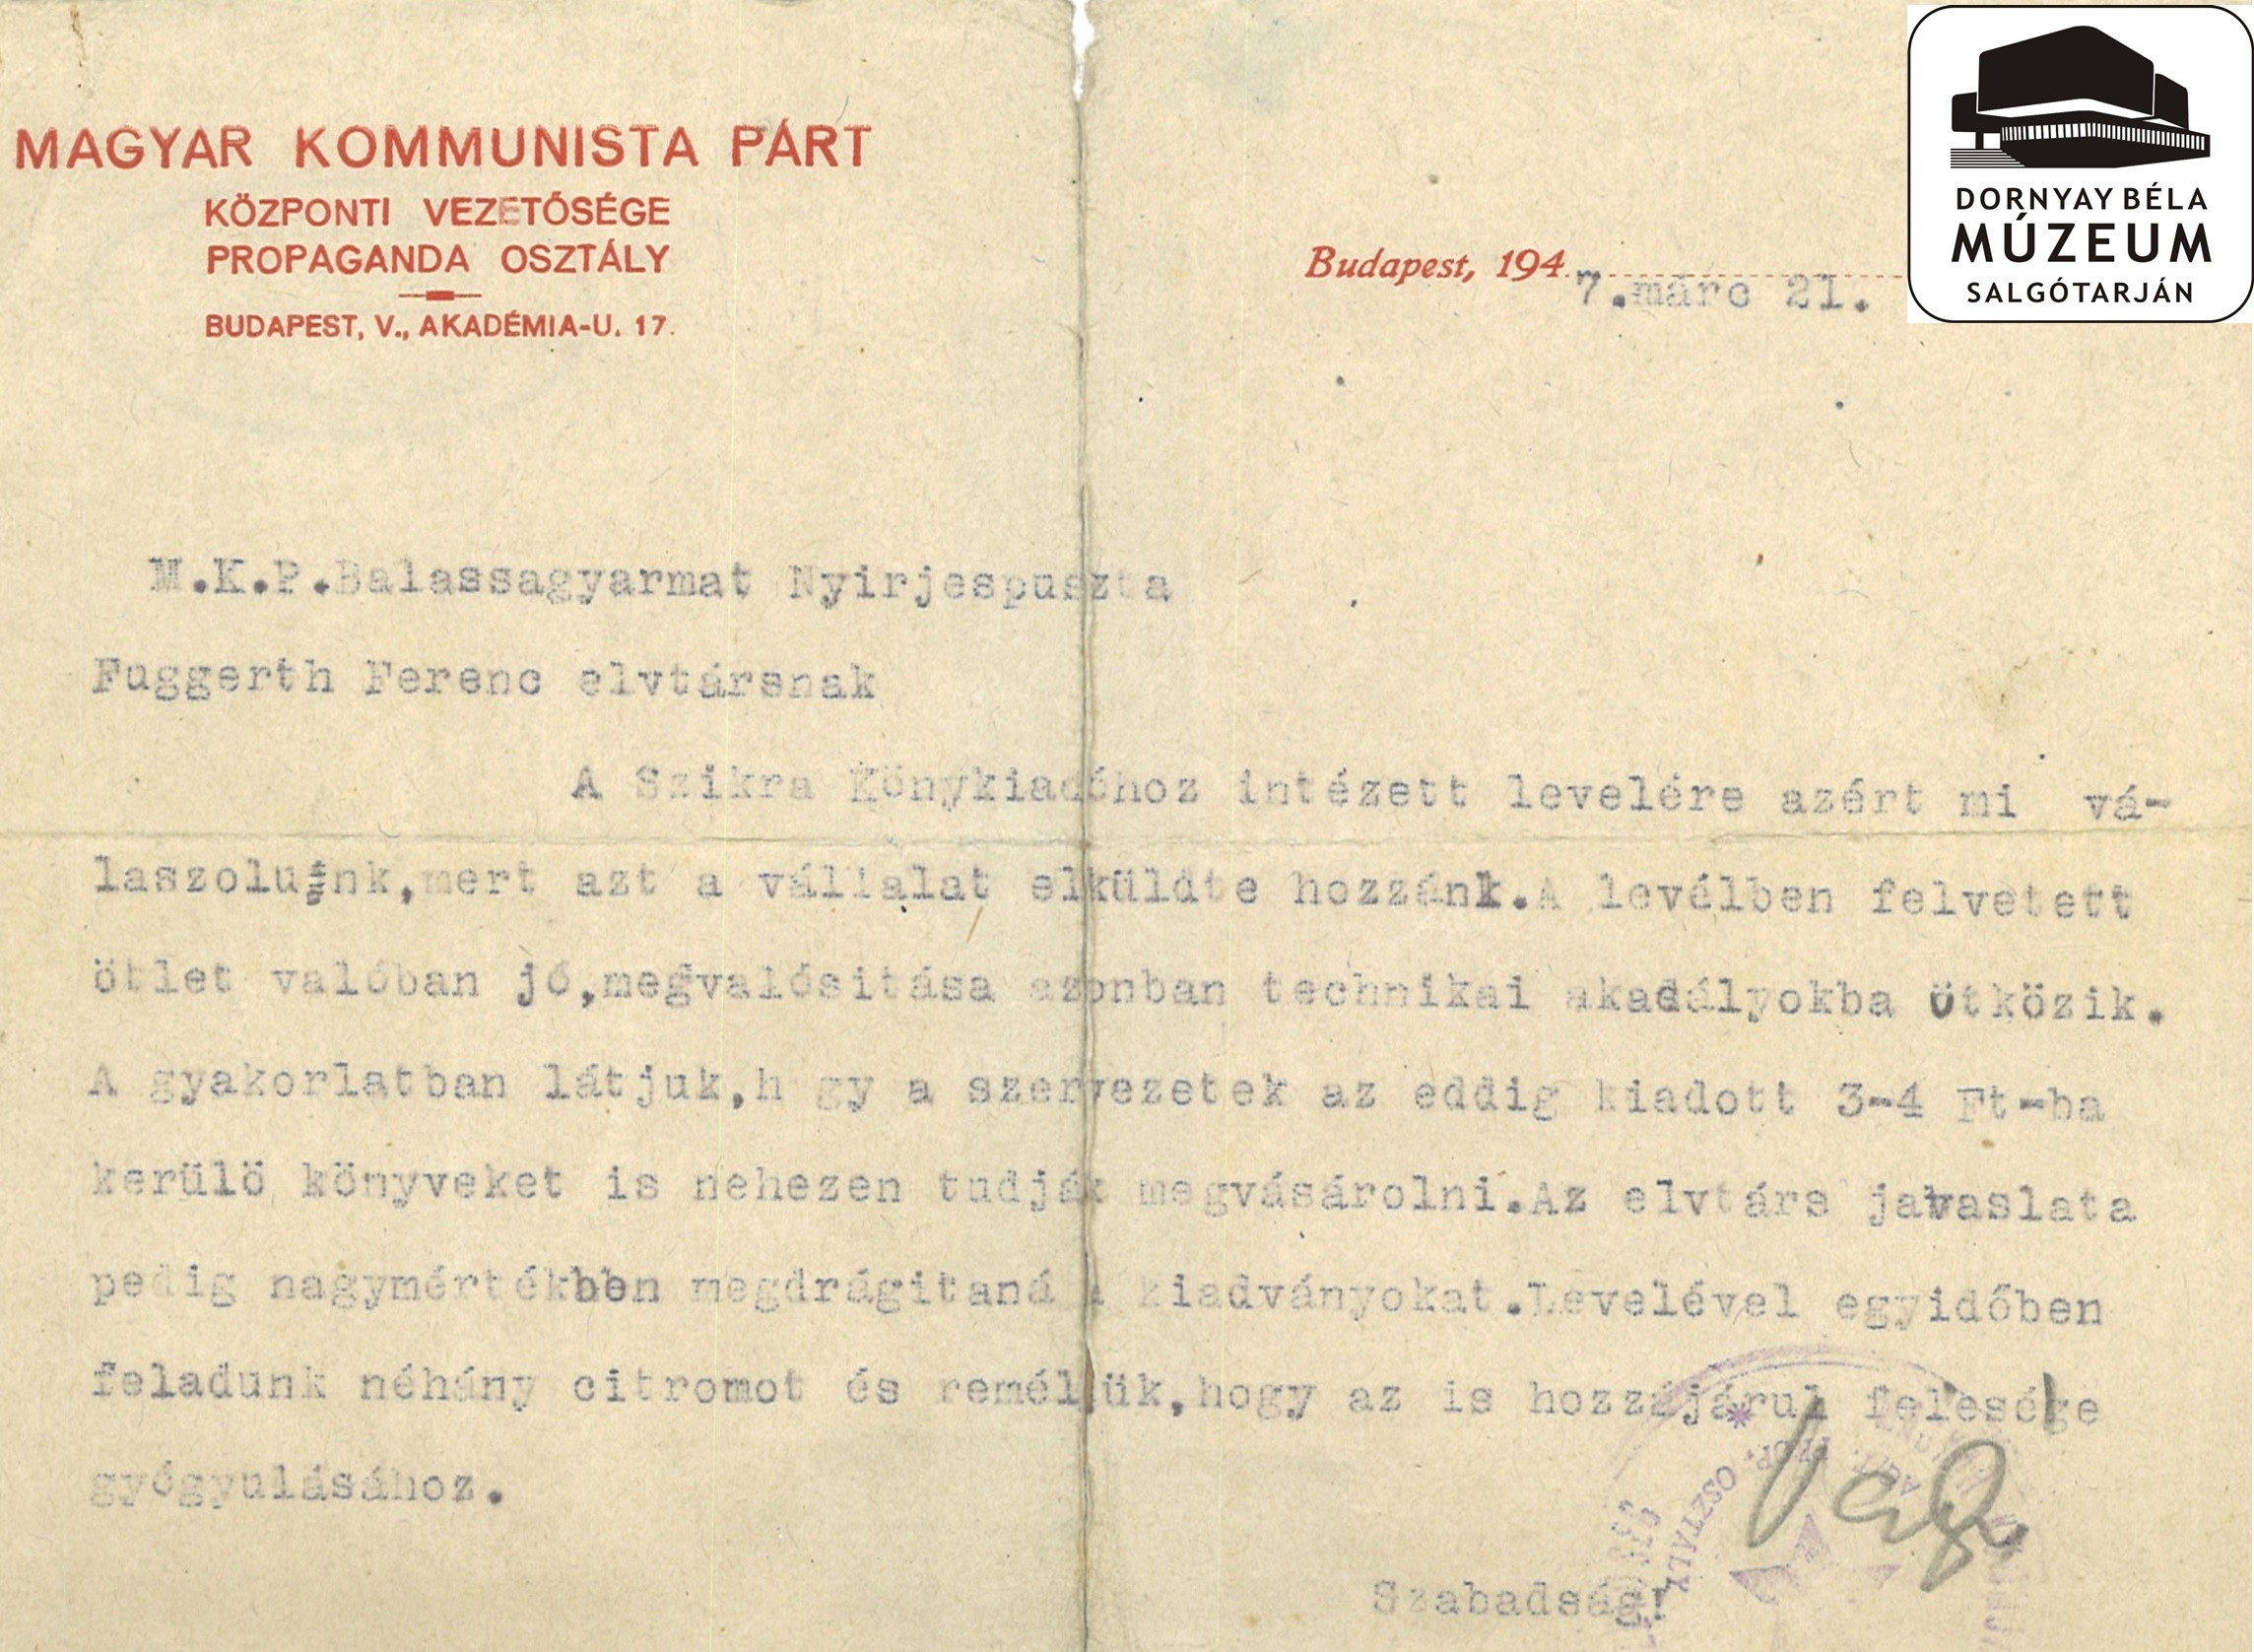 Magyar Kommunista Párt Központi Vezetőségének válasza Fuggerth Ferenc javaslataira (Dornyay Béla Múzeum, Salgótarján CC BY-NC-SA)